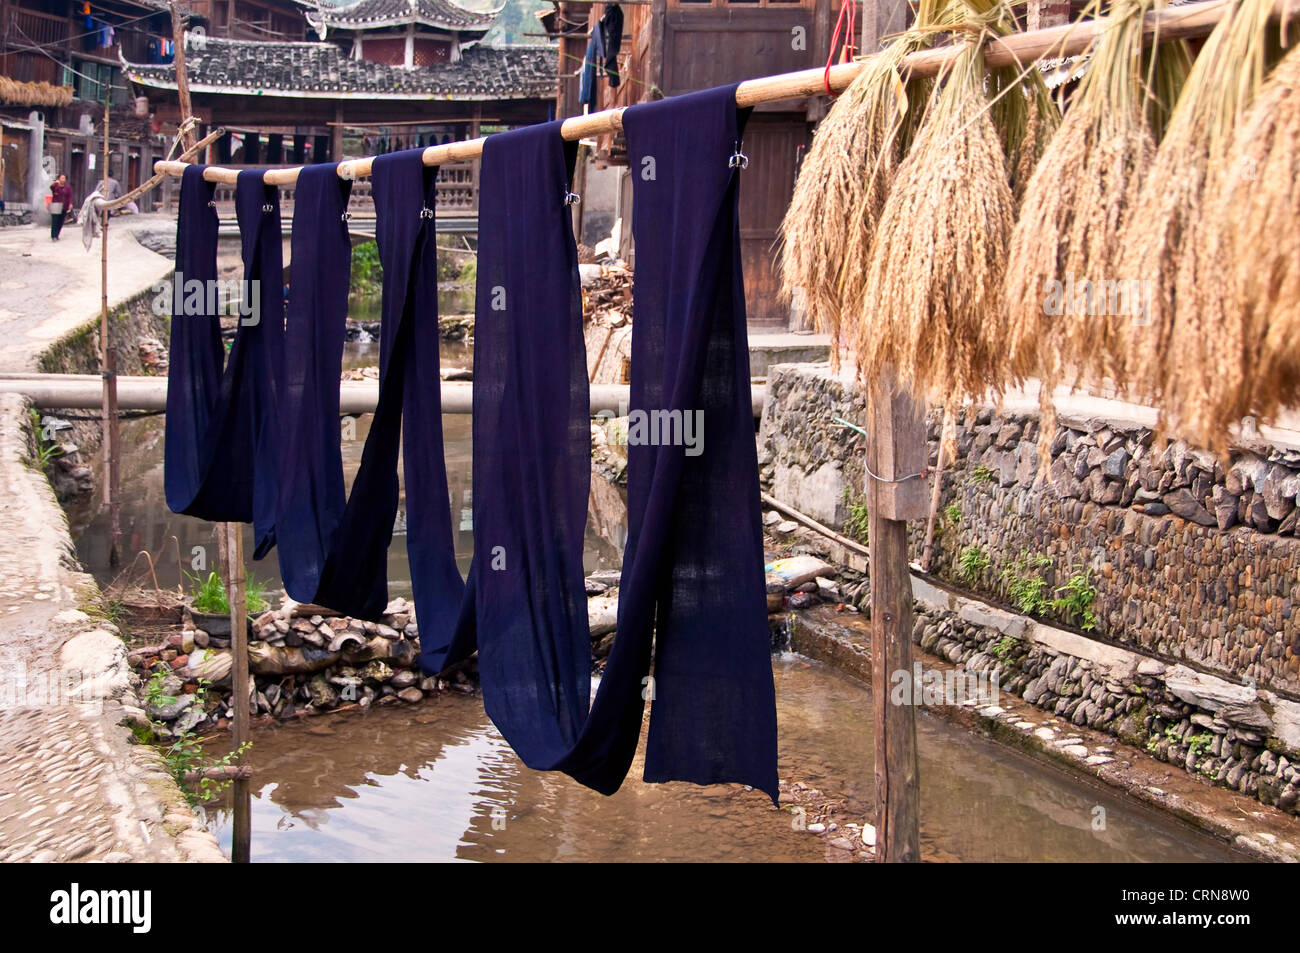 Indigo gefärbten Stoff und Reis Ohren hängen zum Trocknen in der Sonne - Dong Dorf Zhaoxing, Guizhou Provinz - China Stockfoto